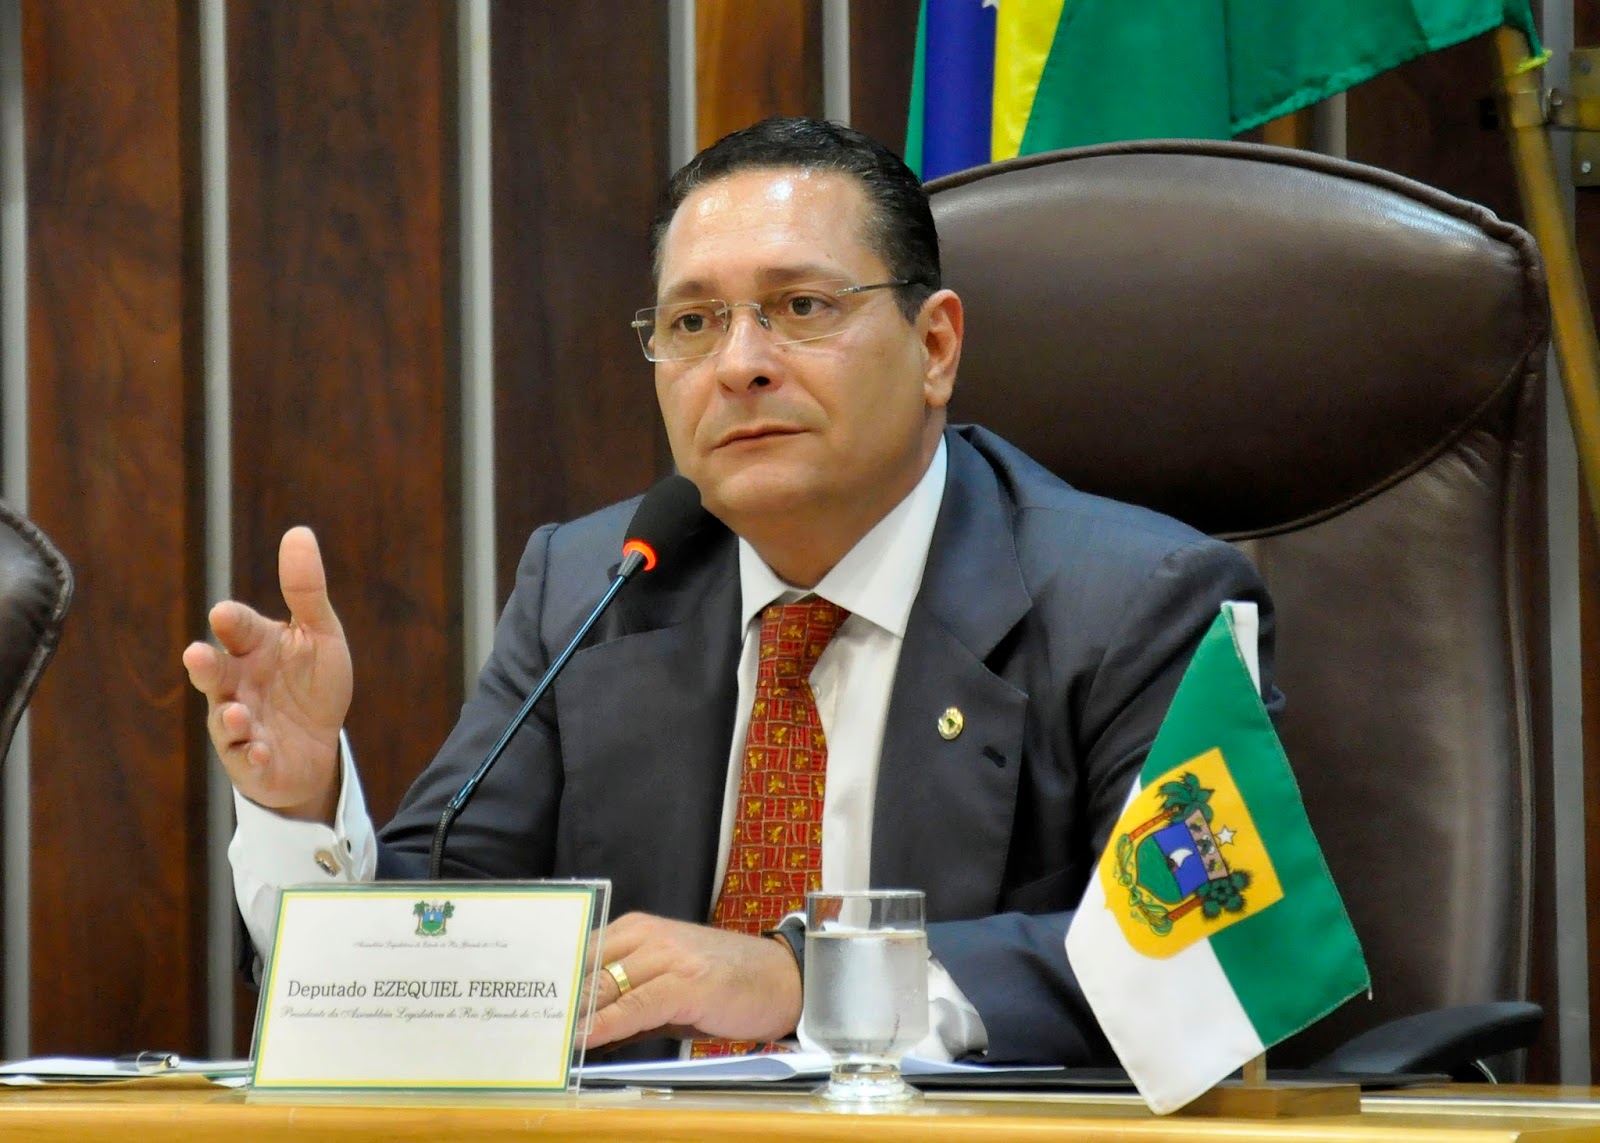 Ezequiel Ferreira propõe ações de infraestrutura rodoviária para Rio do Fogo